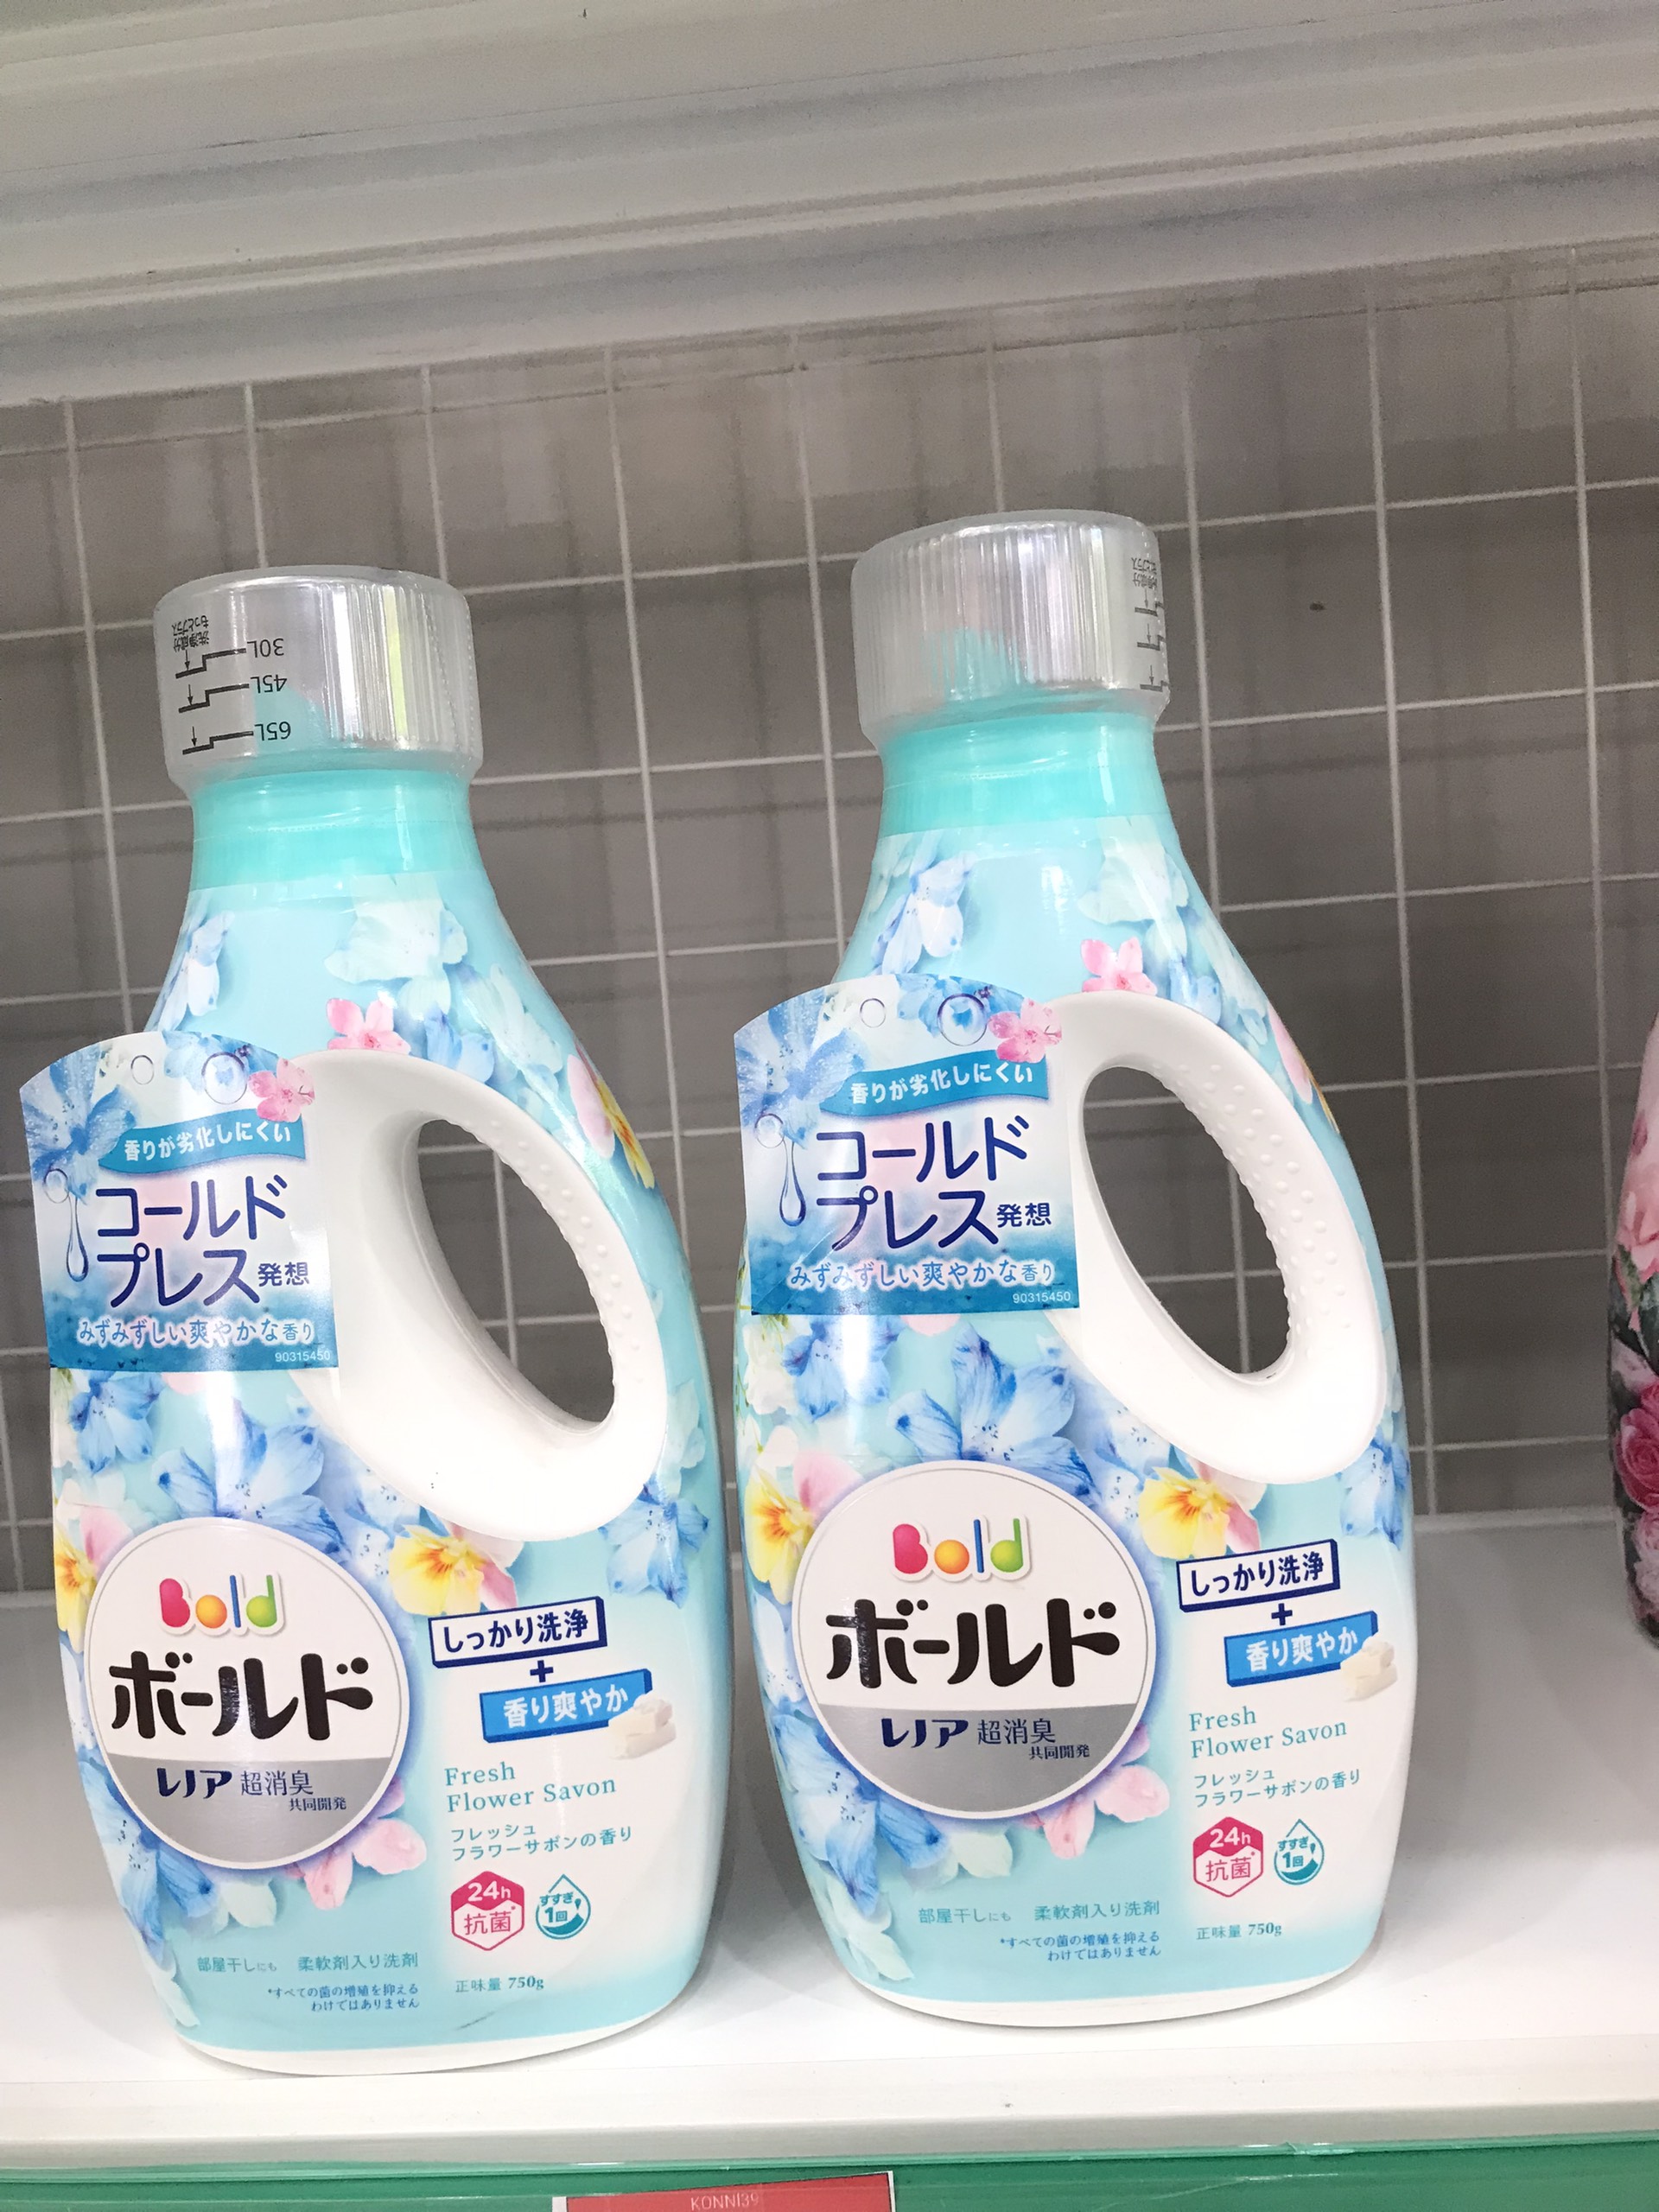 Nước giặt xả Bold P&G hương hoa cỏ tự nhiên (màu xanh) – Nhật Bản 750g